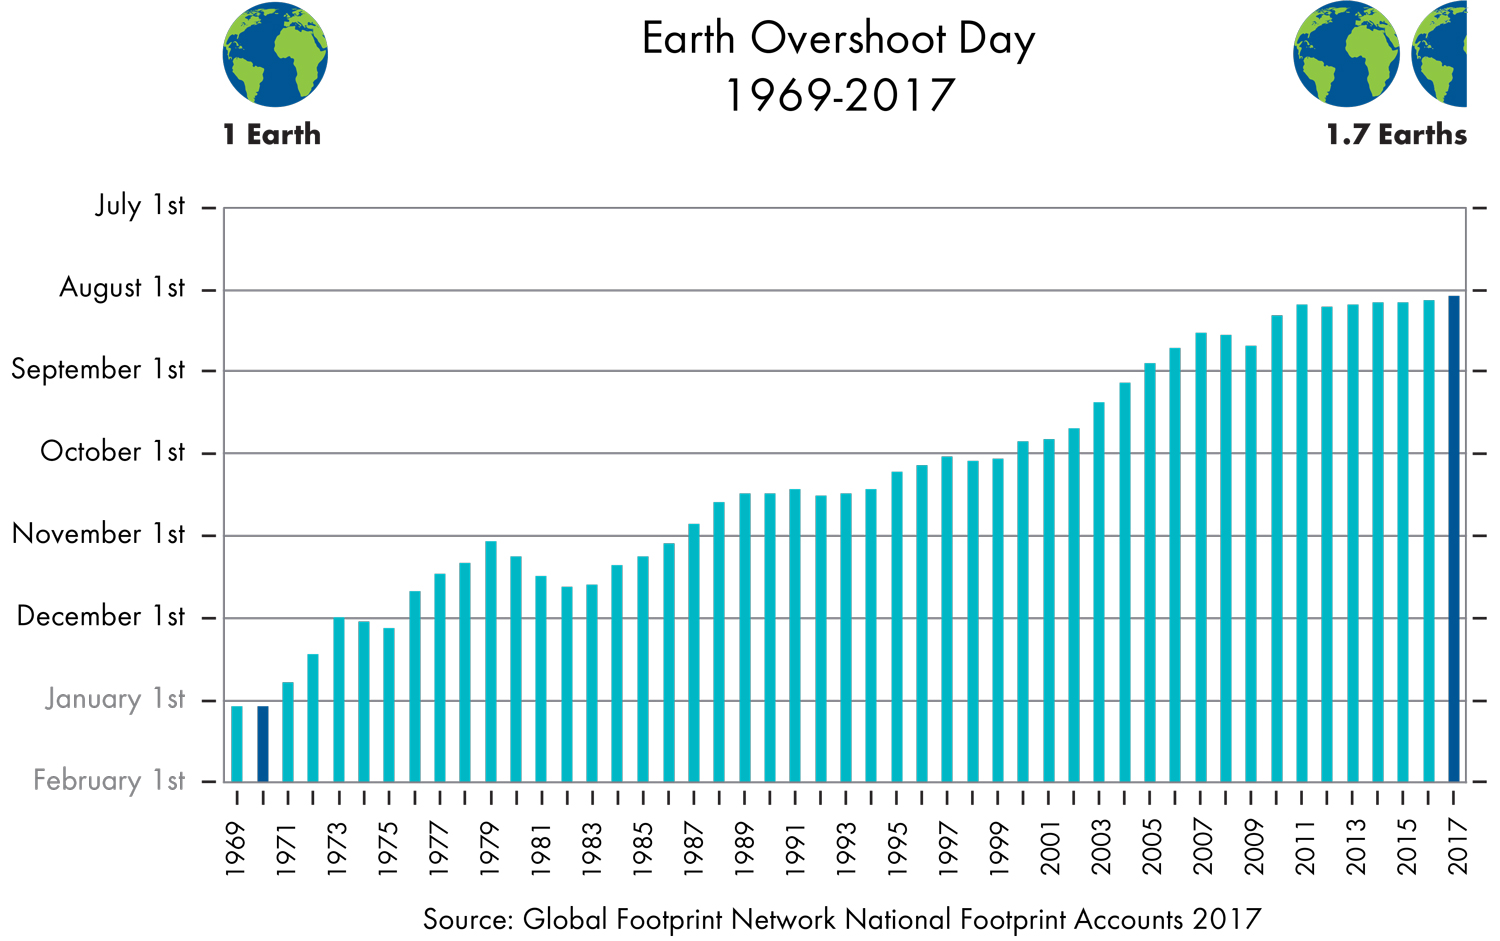 Earth Overshoot Day 1969-2017